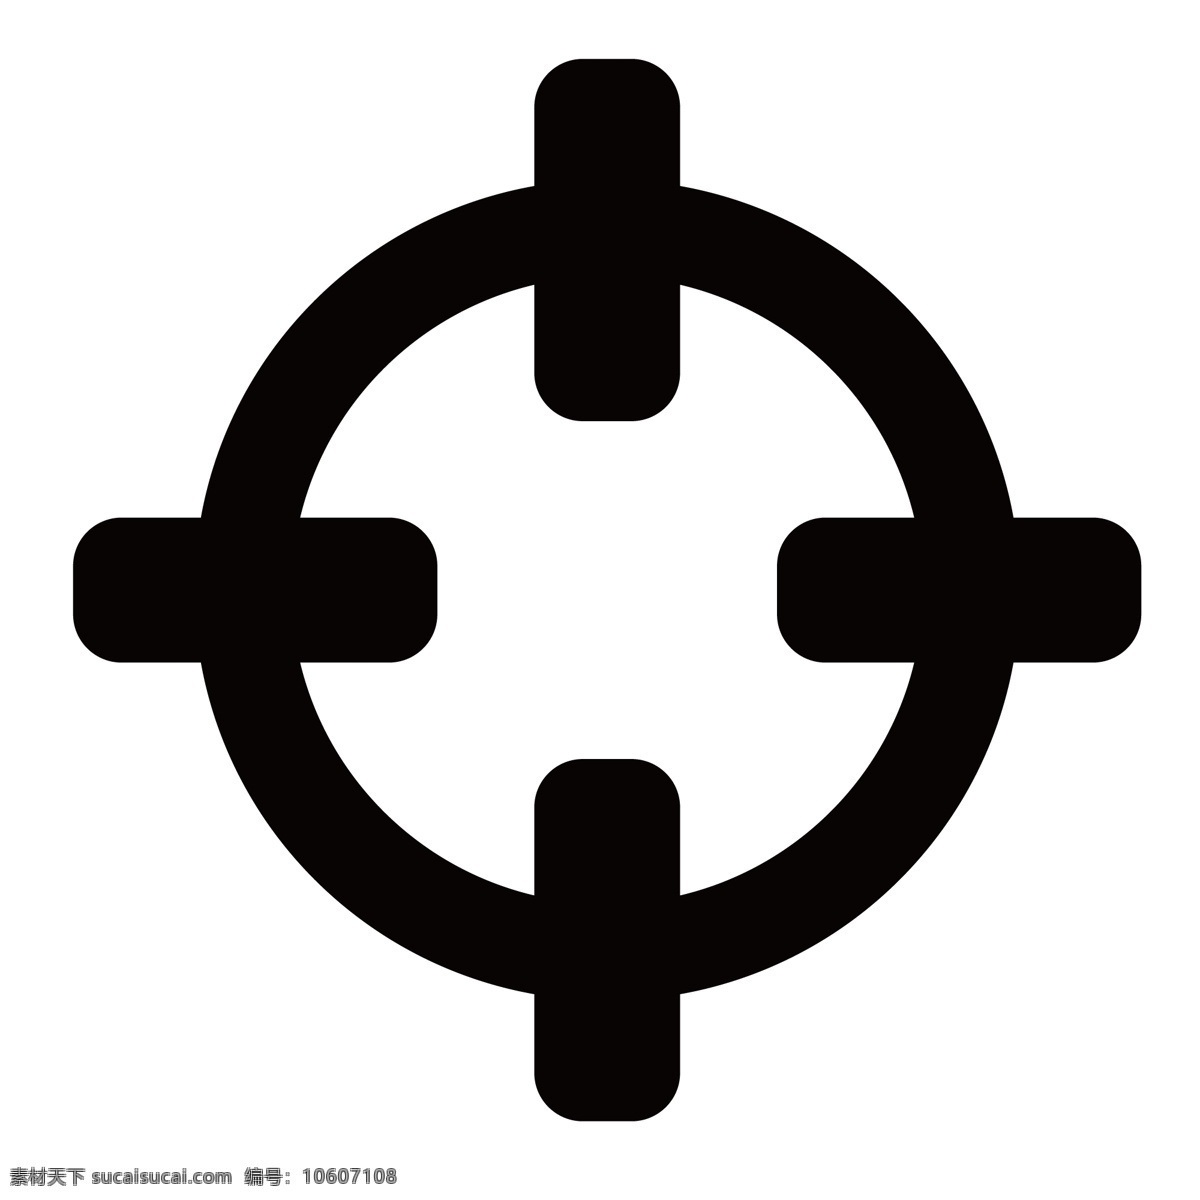 圆形 的卡 通 方向盘 形状 黑色图标 电子图标 网络图标 图标设计 科学图标